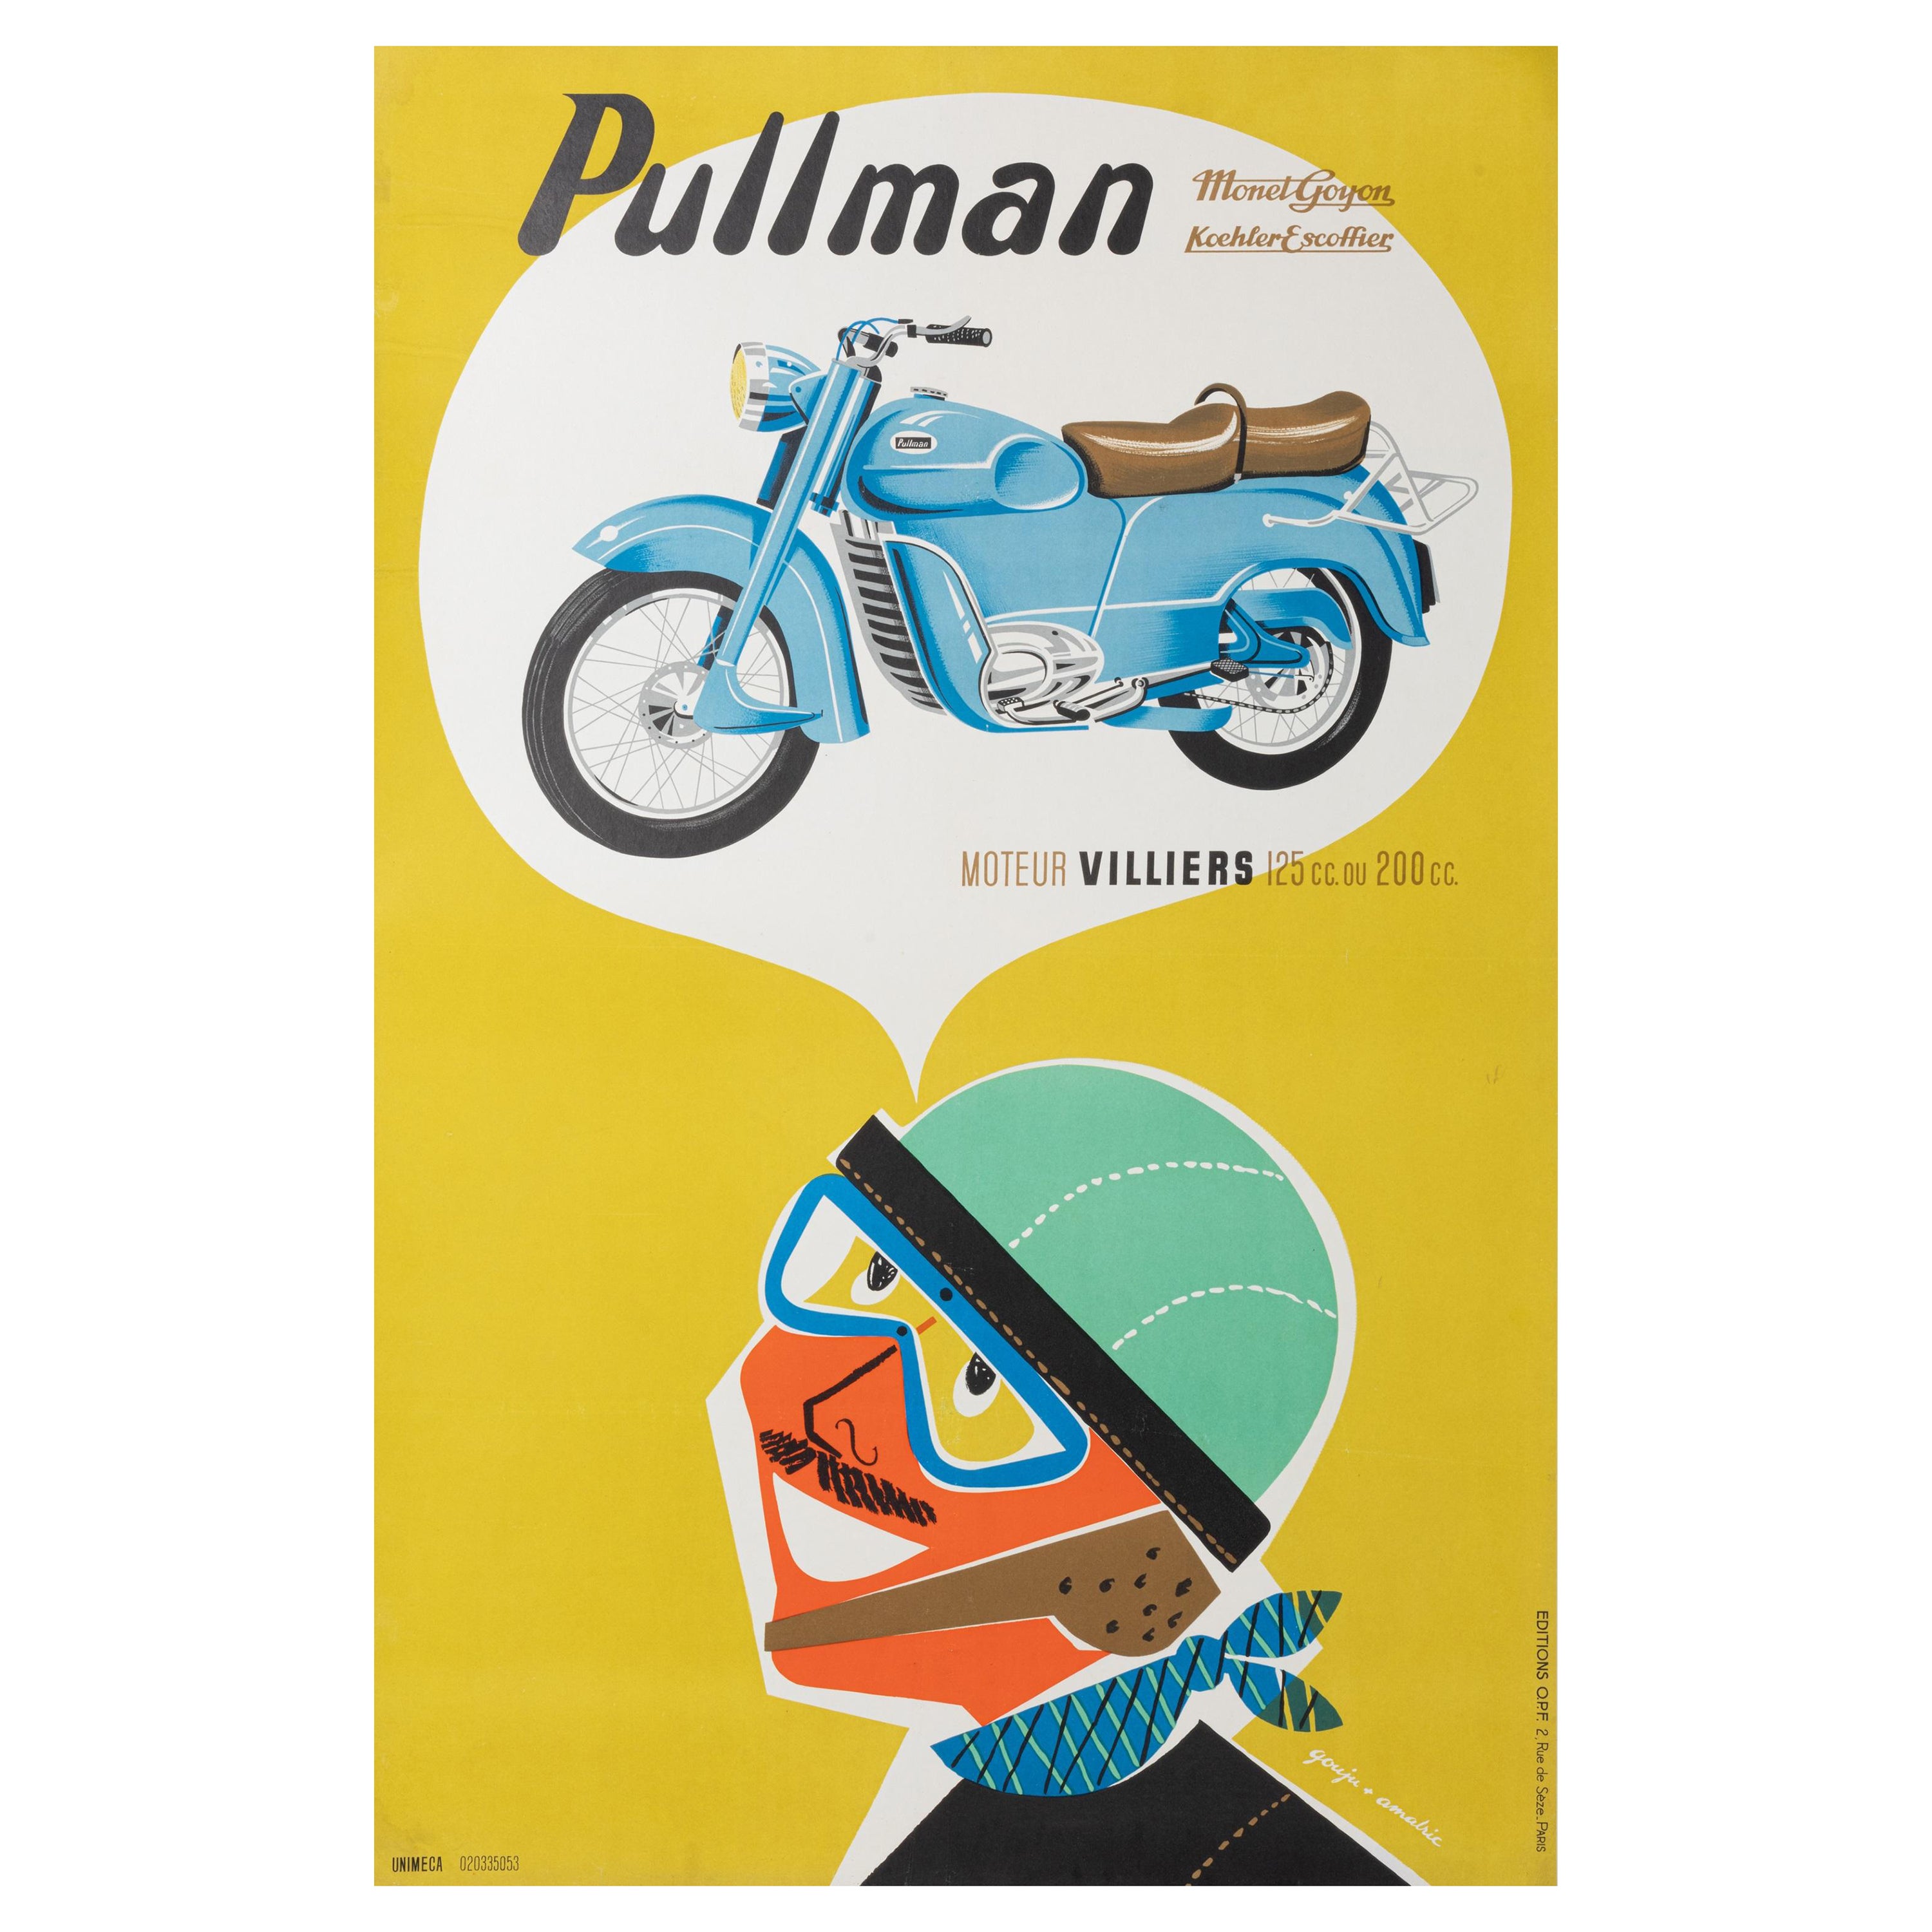 Gouju Amalric, Original Motocycle Poster, Pullman, Monet Goyon Koehler, 1956